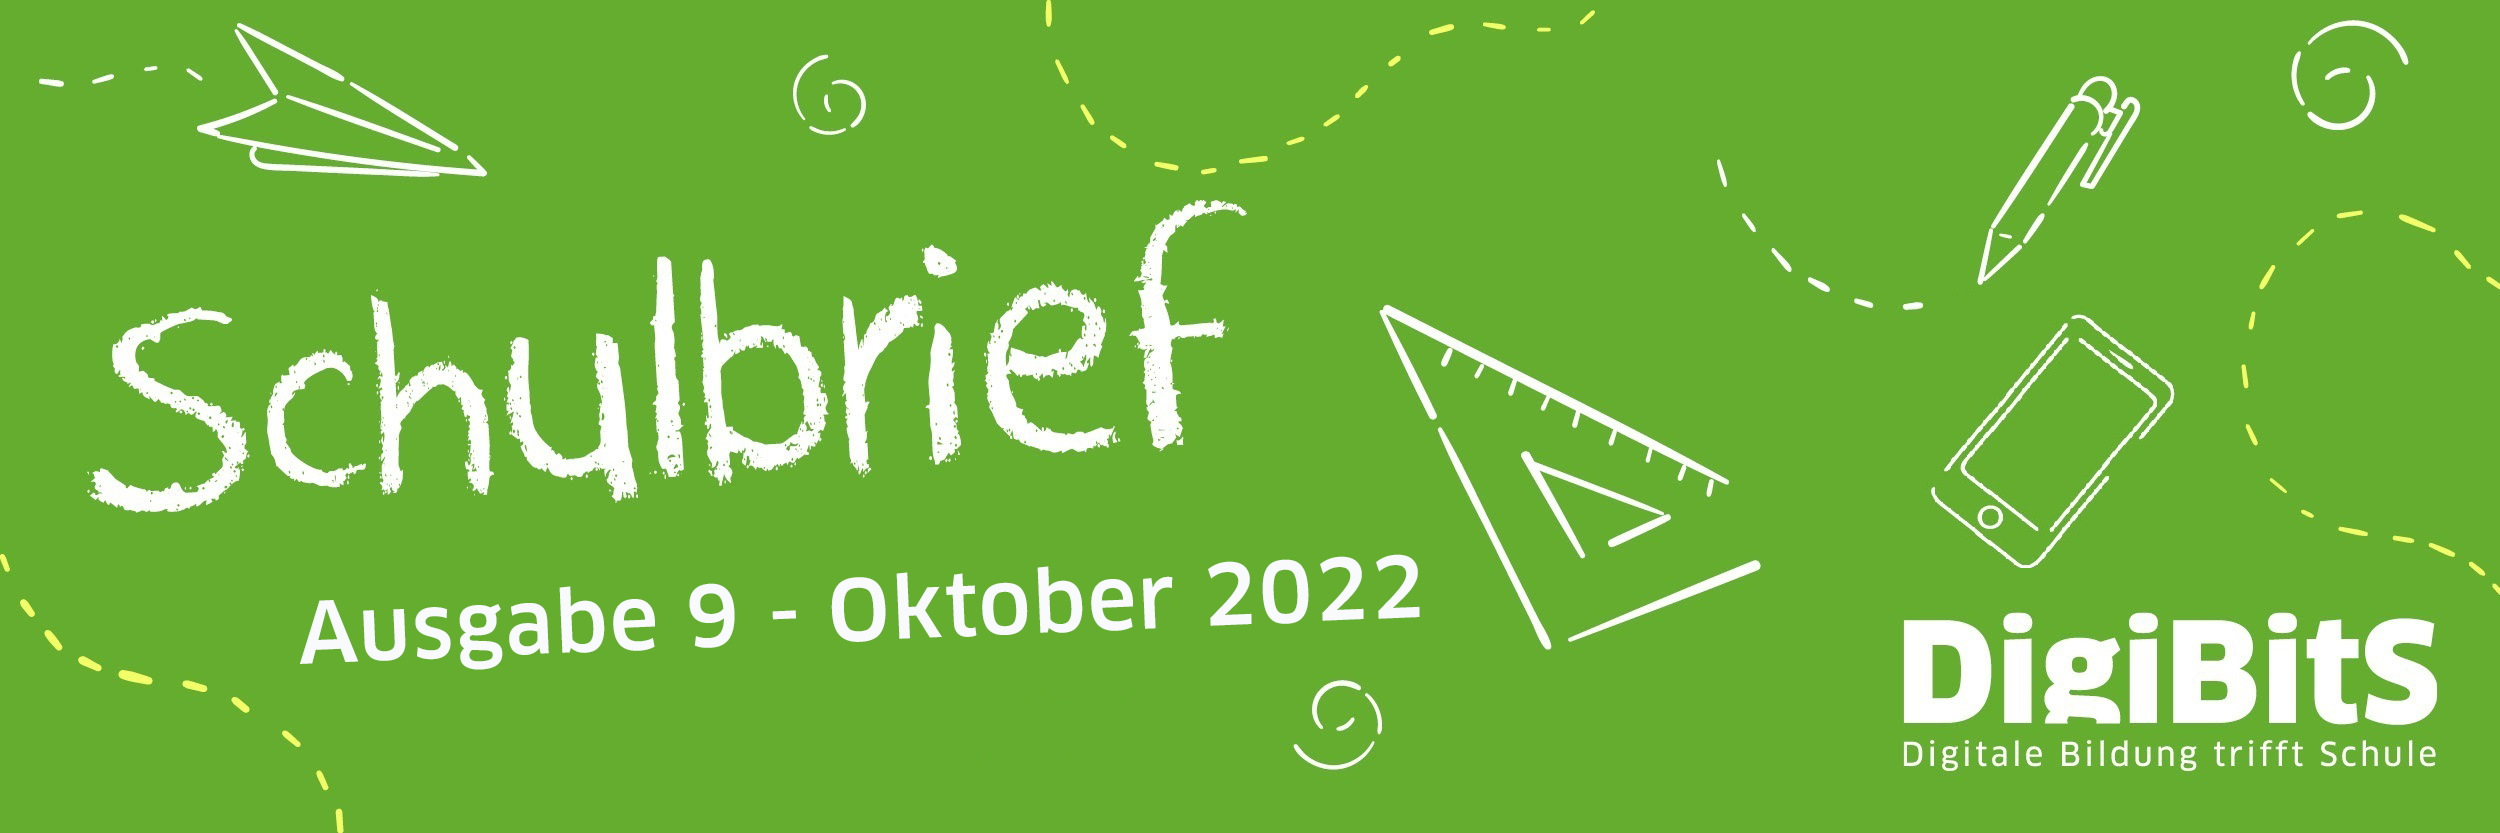 DigiBitS Schulbrief | Ausgabe 9 | Oktober 2022